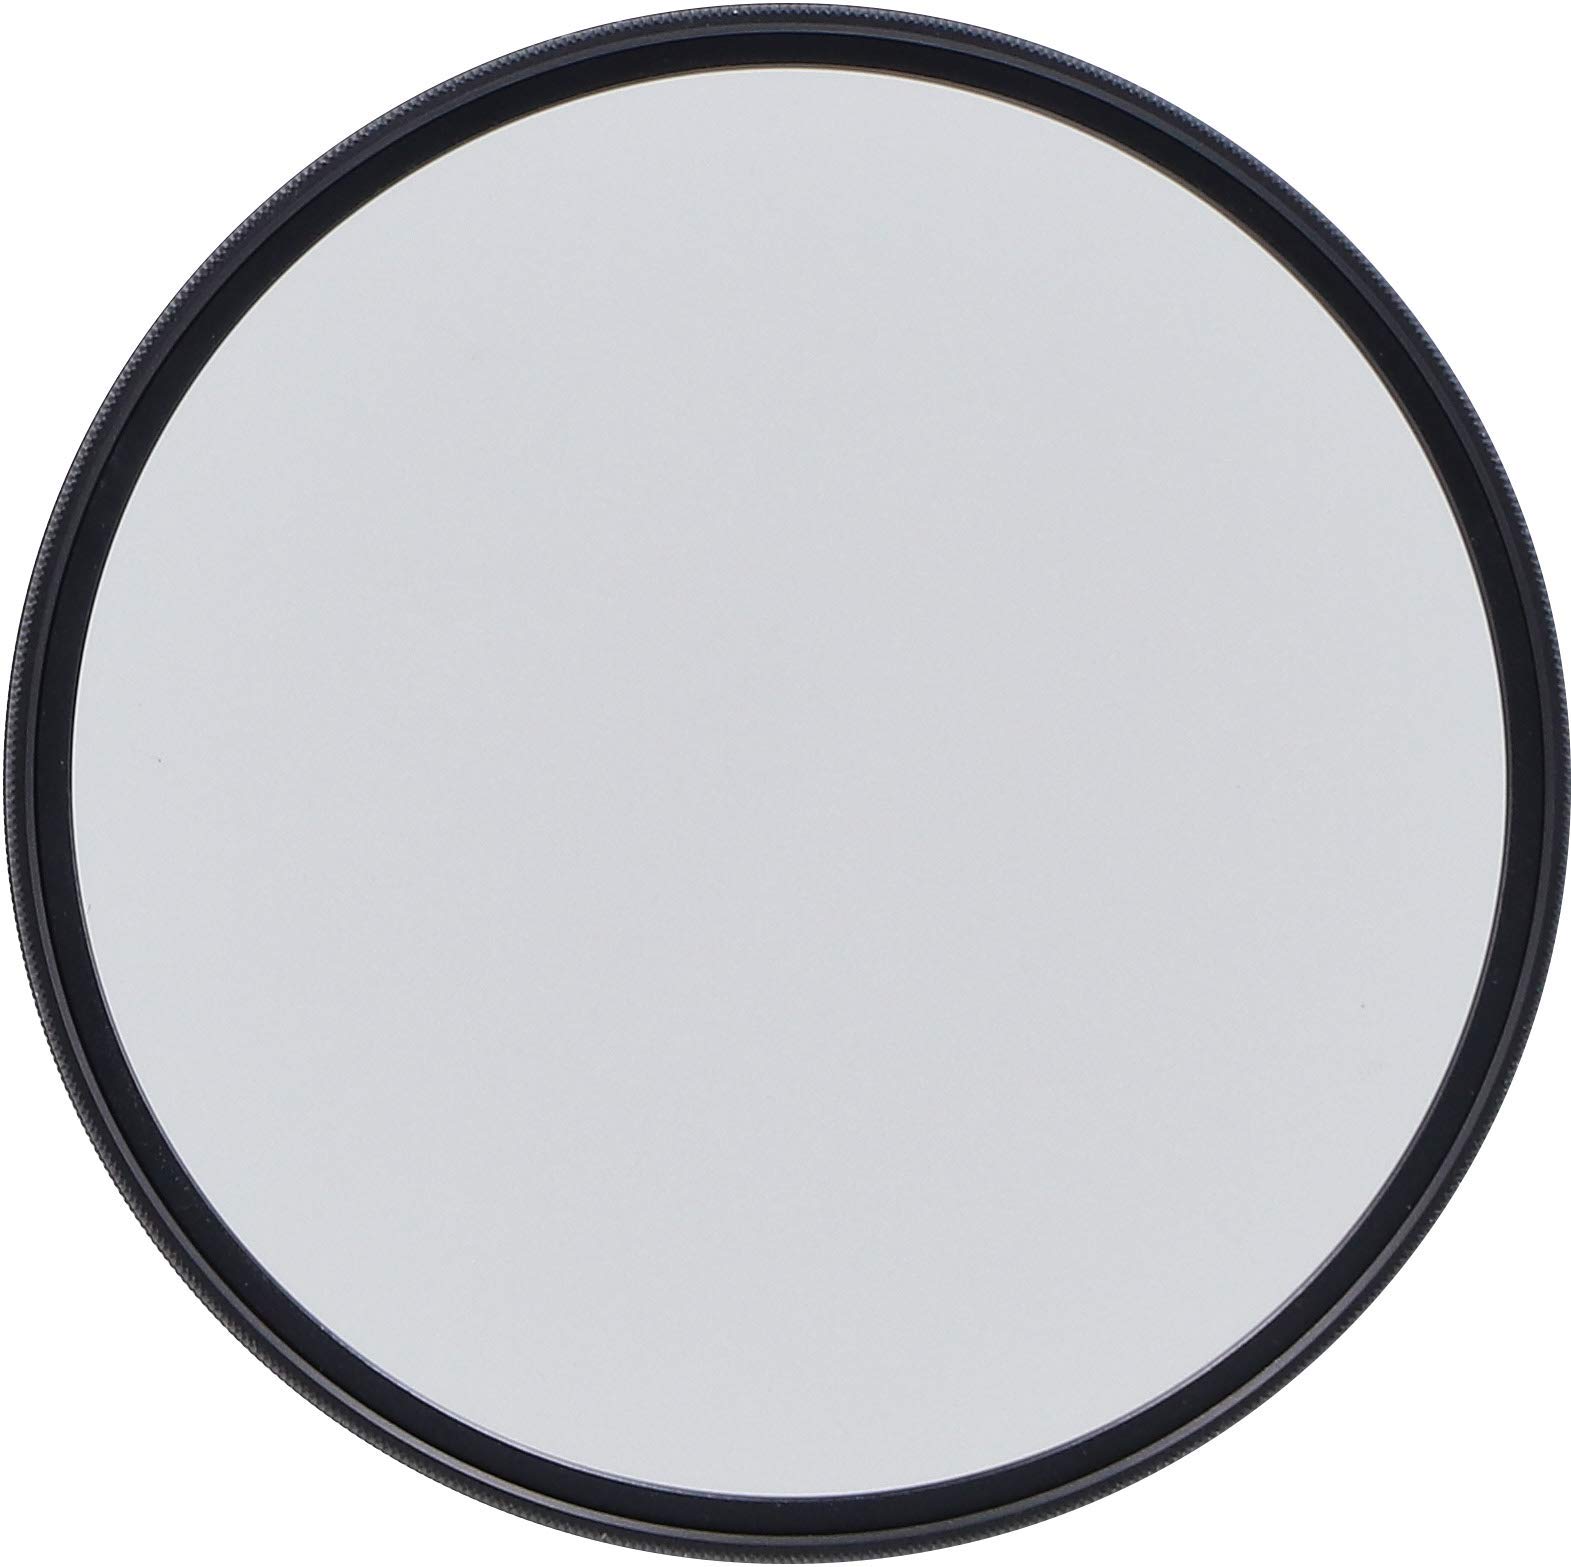 Rollei F:X Pro Rundfilter (67 mm, CPL-Filter) Schraubfilter aus Gorilla®* Glas mit hoher Farbtreue und Reflexionsfreiheit